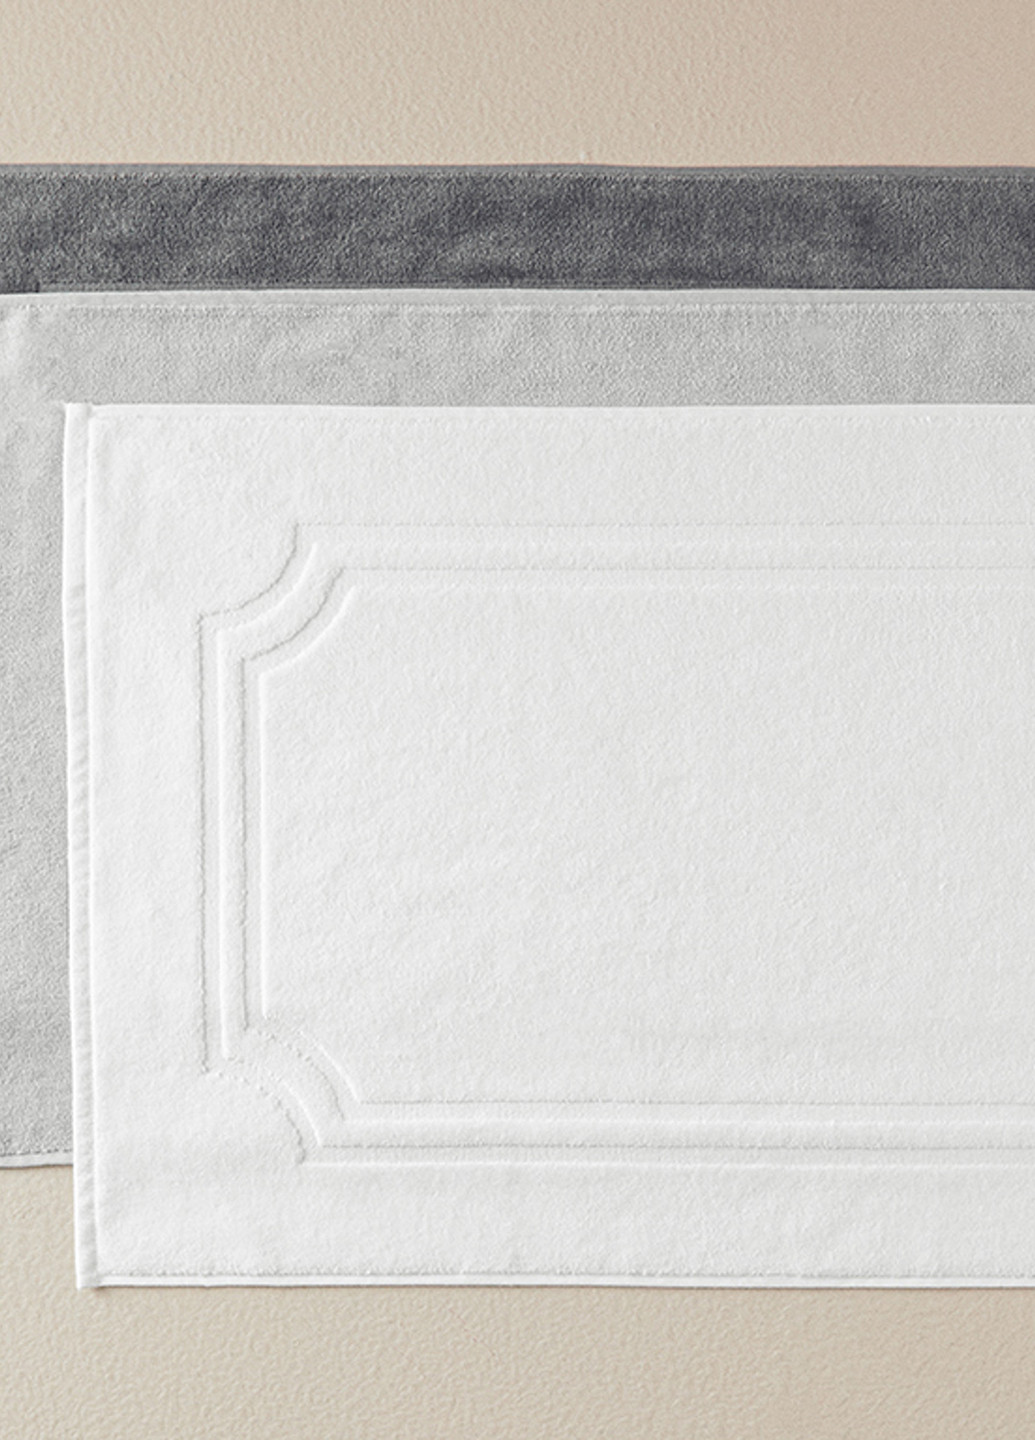 English Home полотенце для ног, 50х70 см однотонный белый производство - Турция